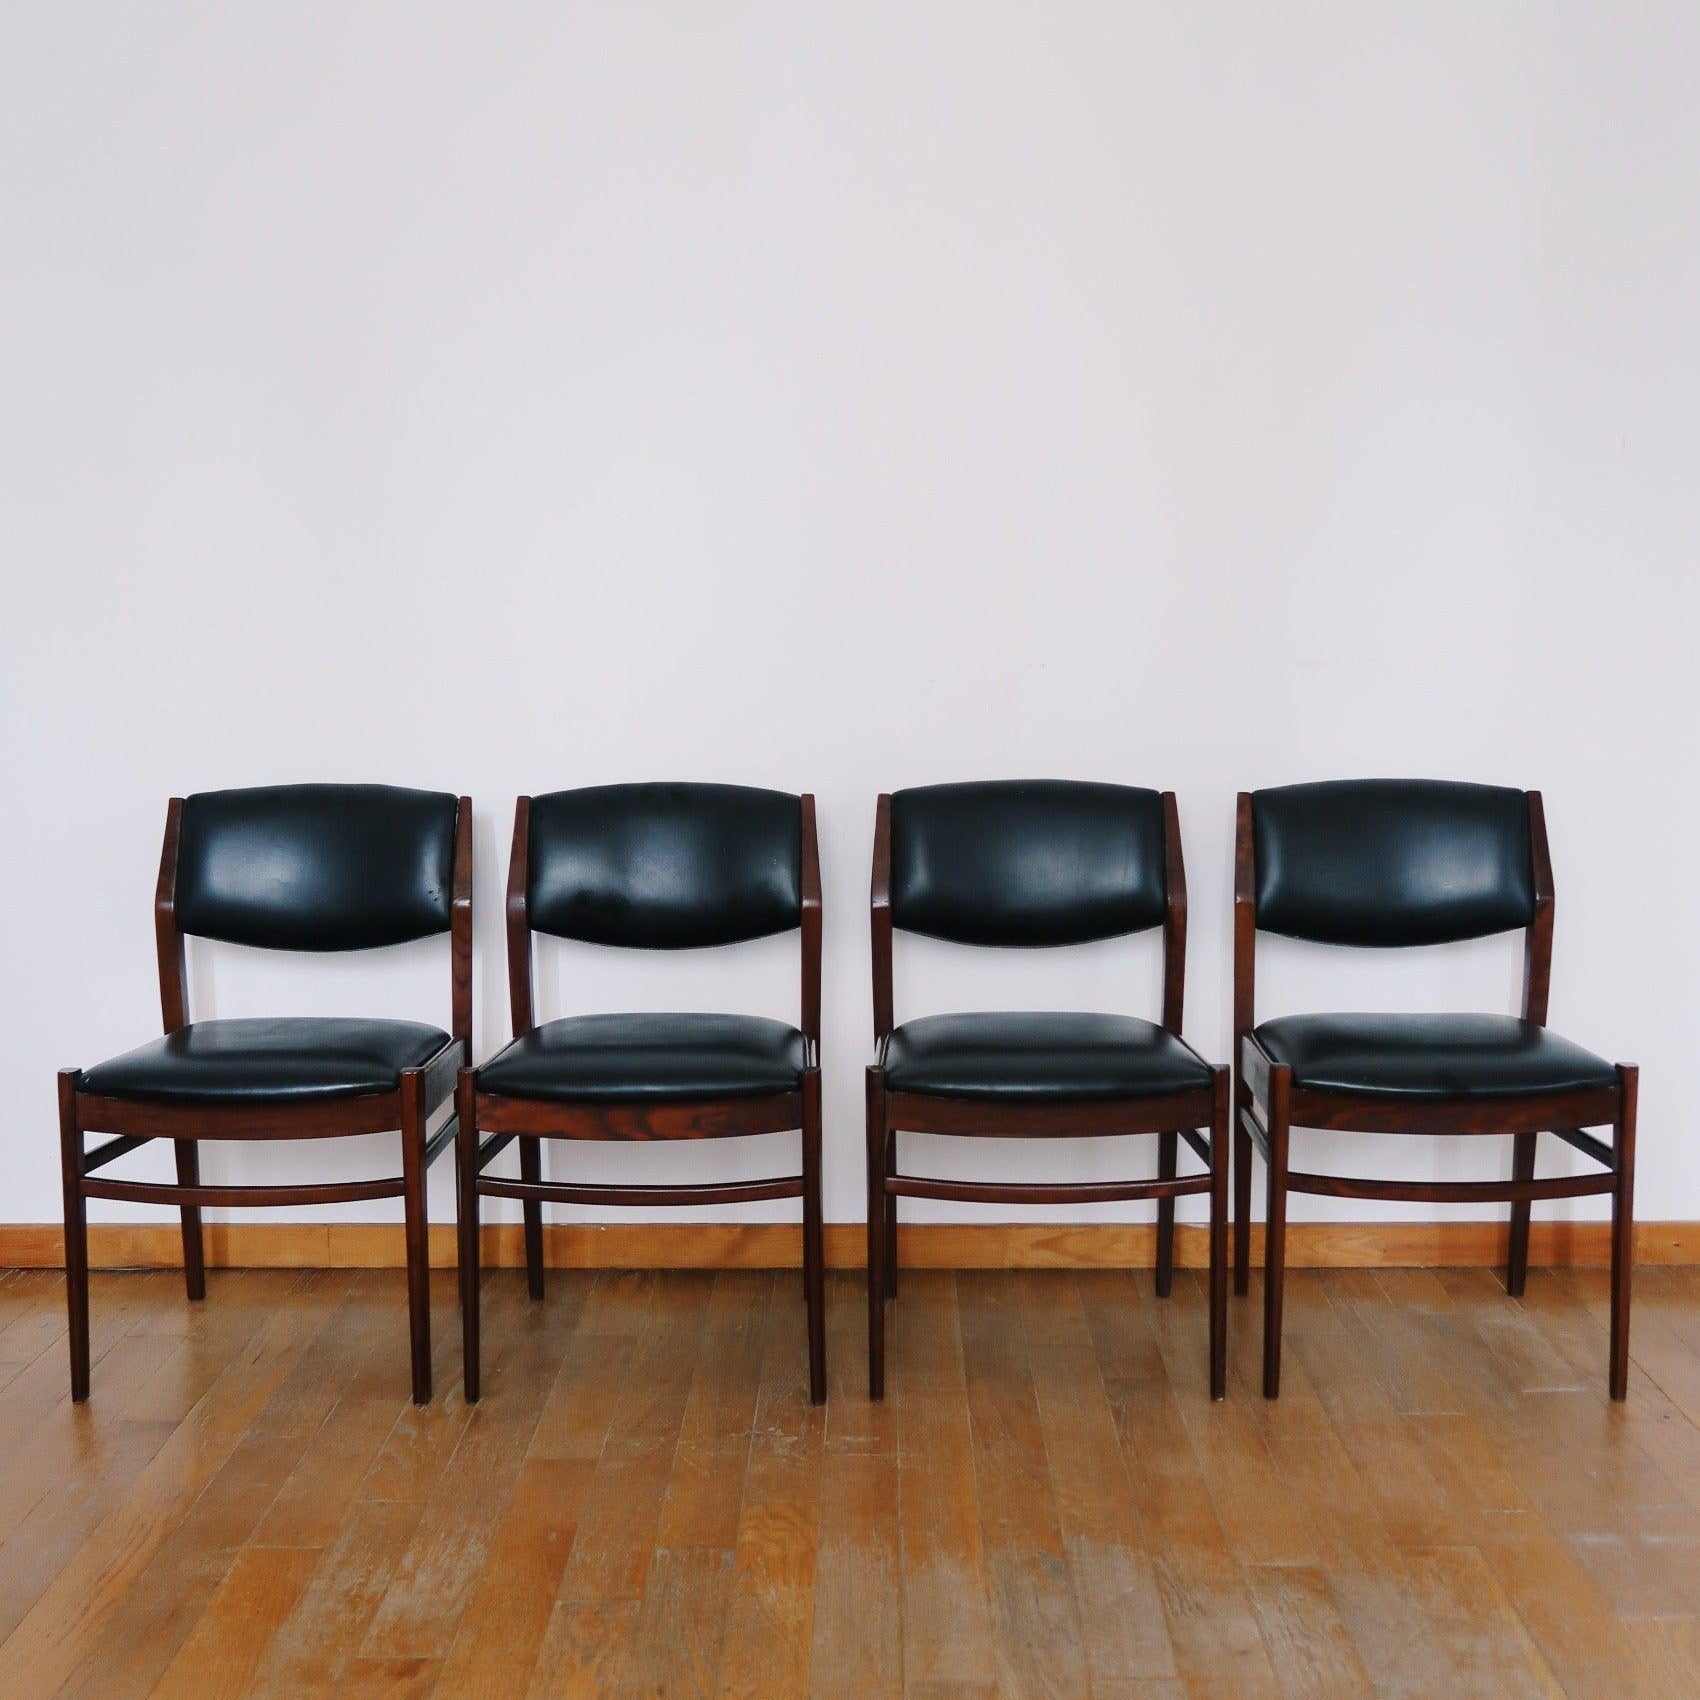 4 chaises scandinaves noir skaï cuir bois teck vintage danois pieds compas fuselés